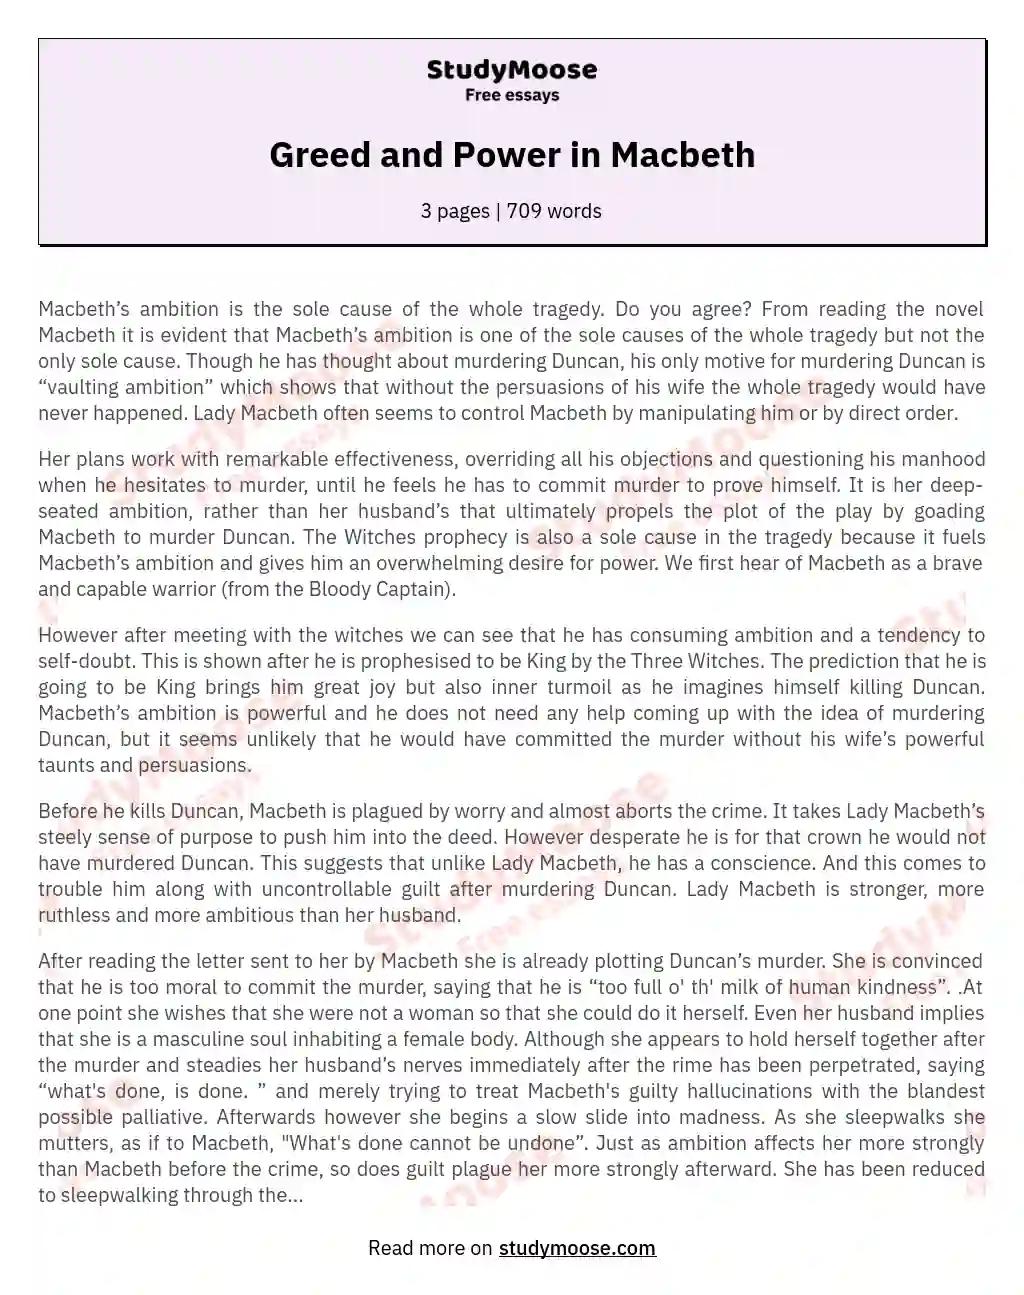 lady macbeth greed essay